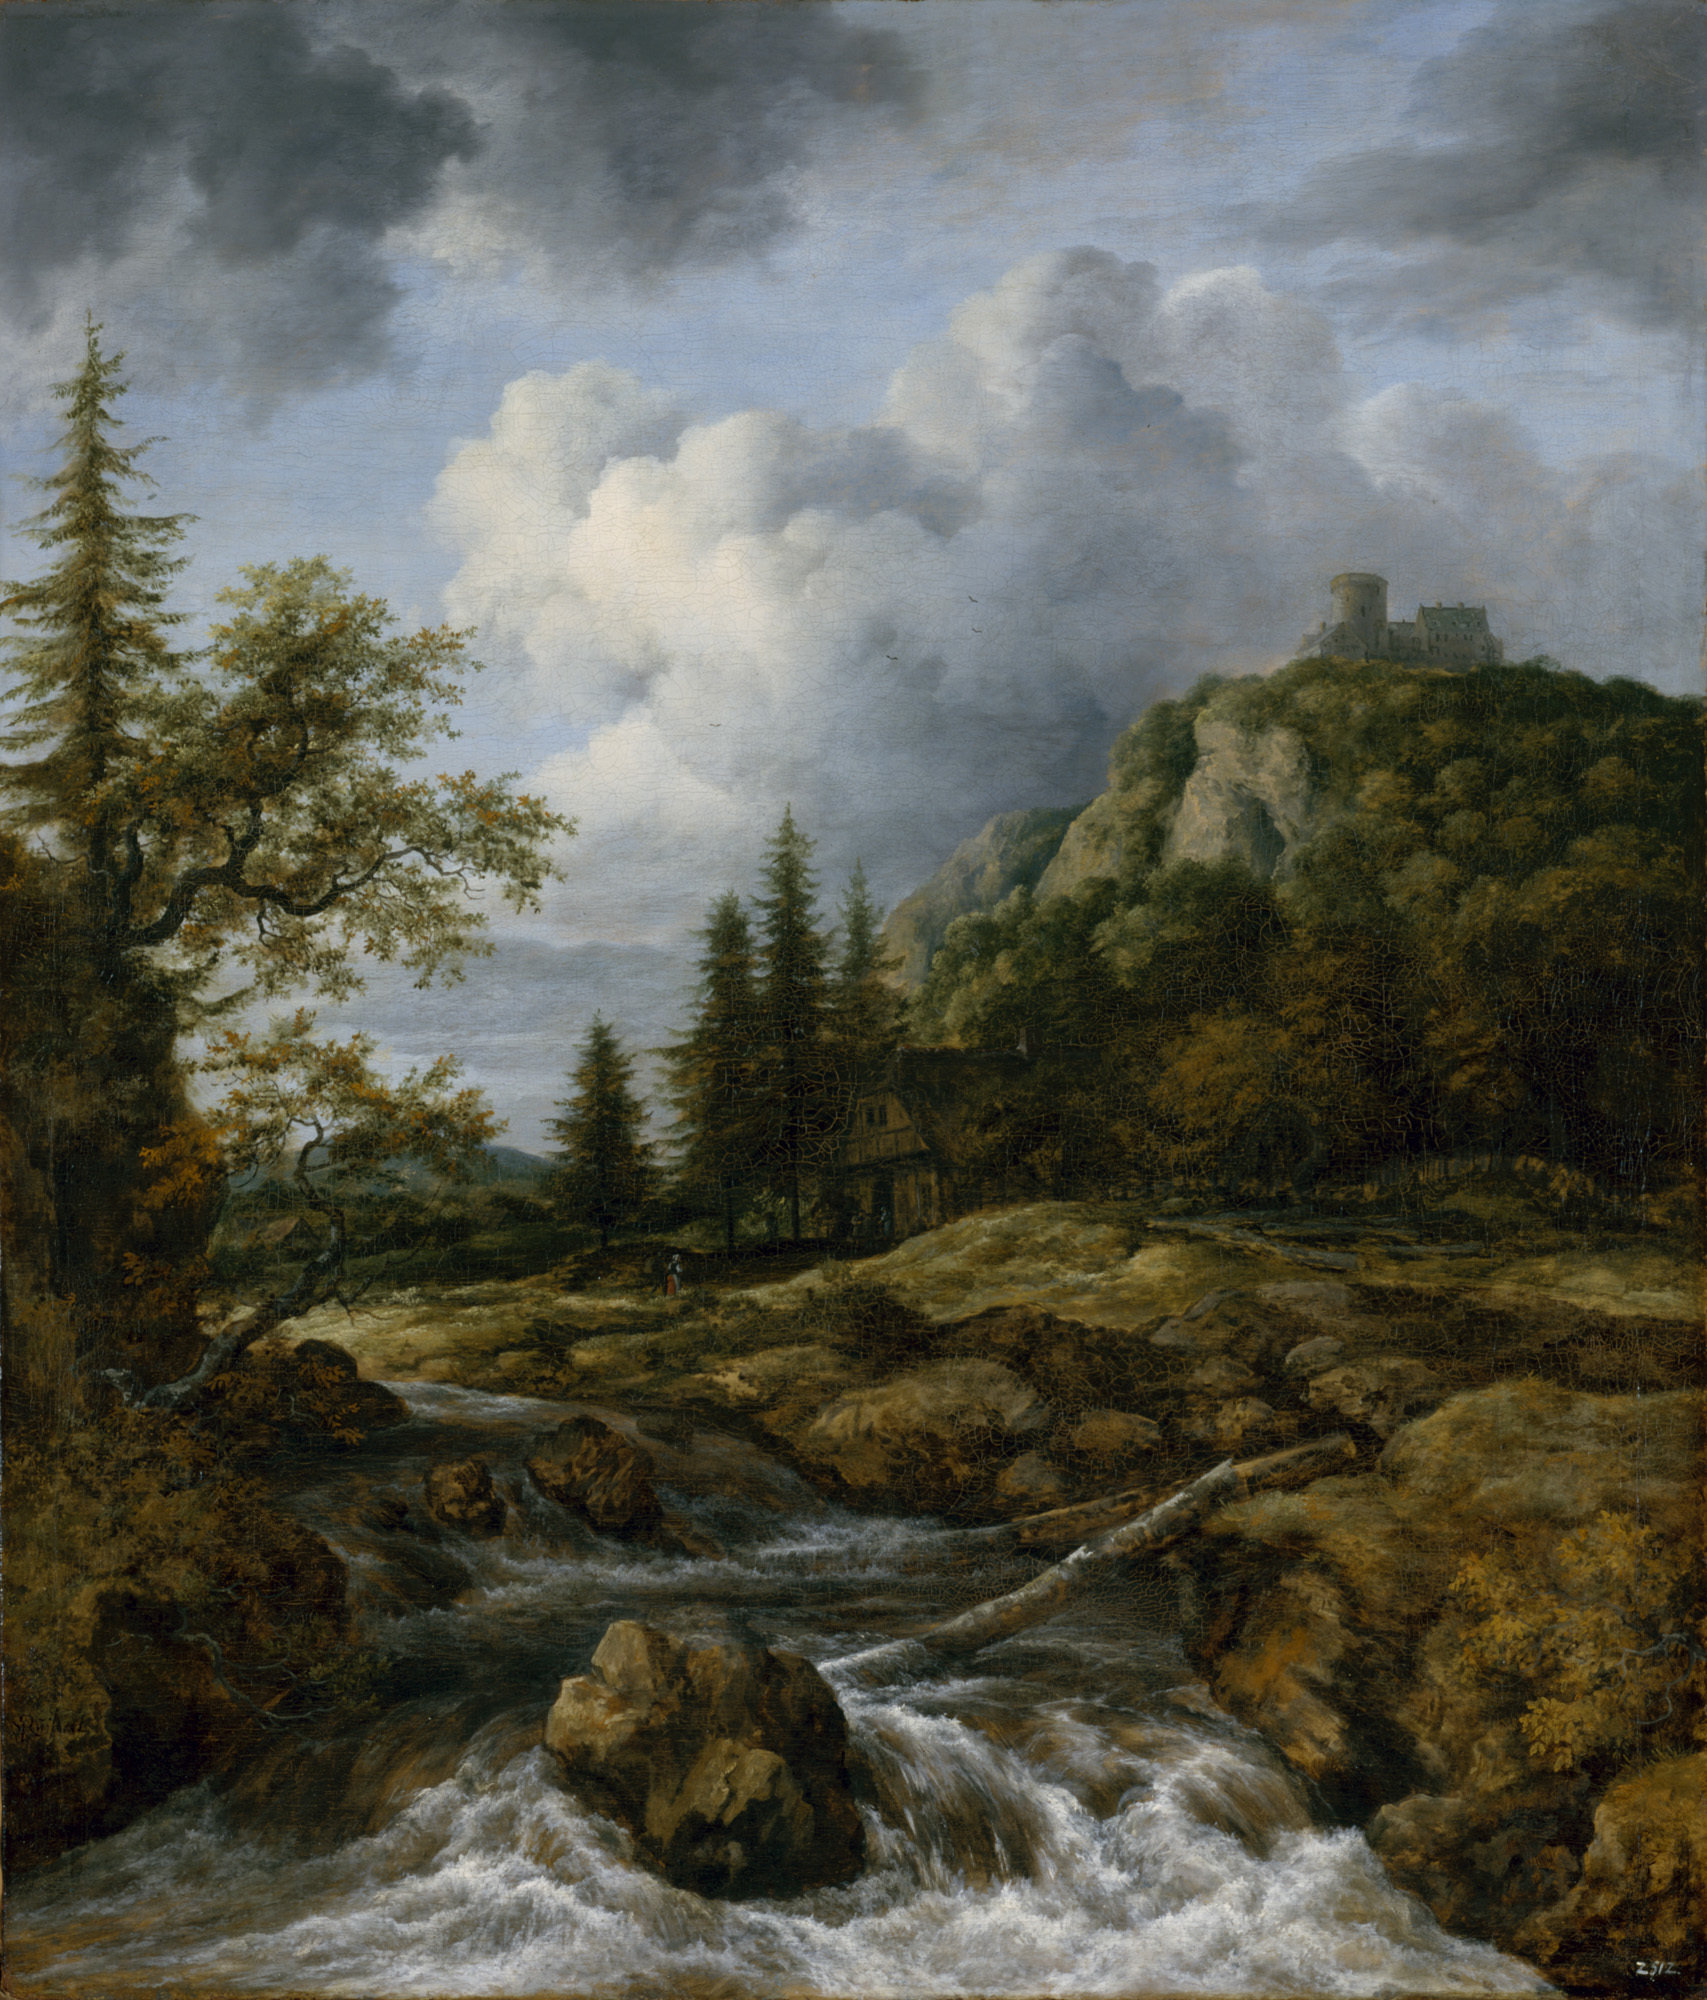 ヤーコプ・ファン・ライスダール 「城山の前の滝」 1665-70年頃 ドレスデン国立古典絵画館